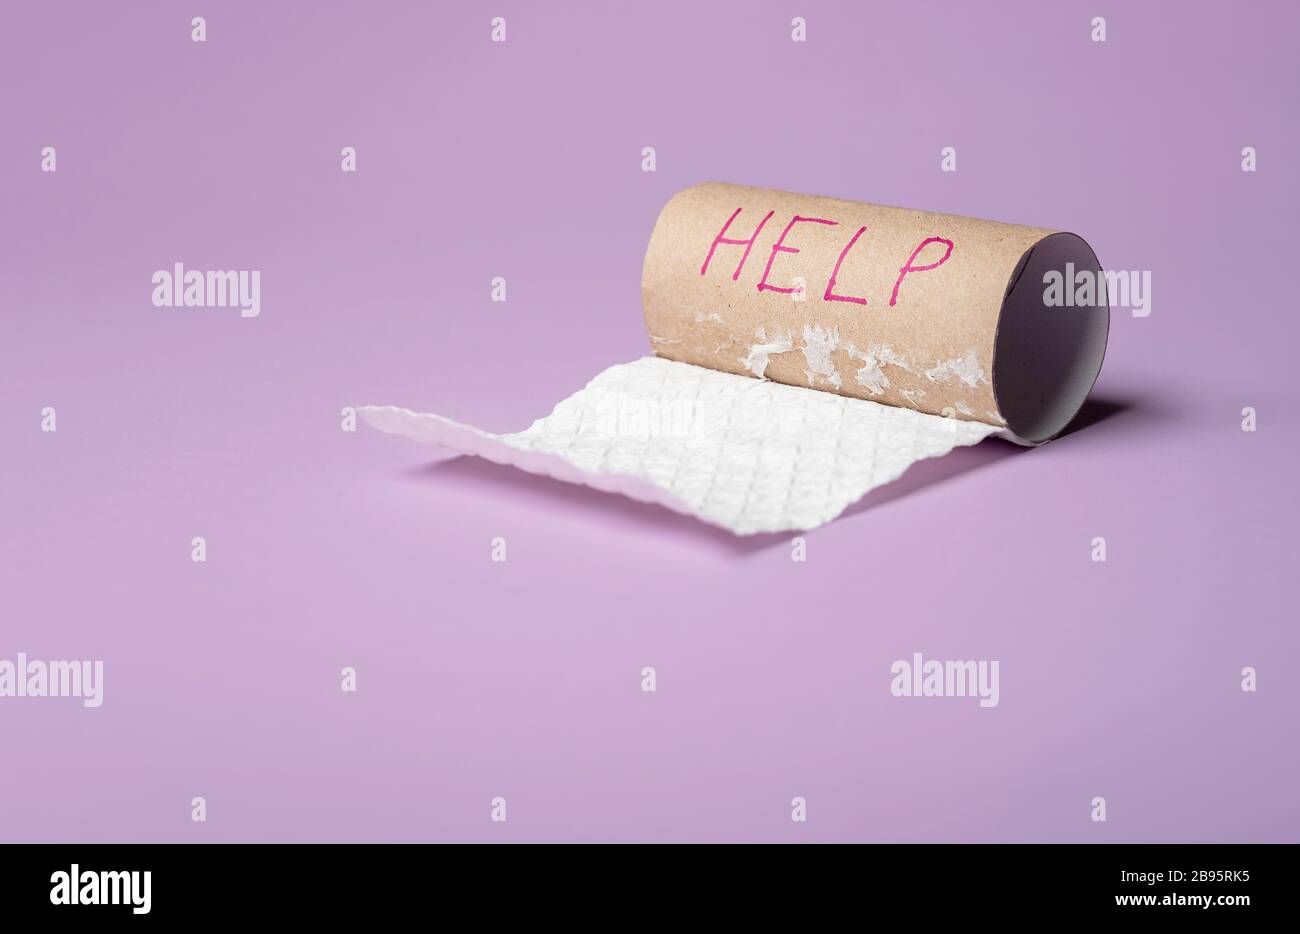 Rotolo di carta igienica vuoto su sfondo viola. Parola d'aiuto scritta su un tubo di carta. Esaurite il concetto di carta igienica. Foto Stock